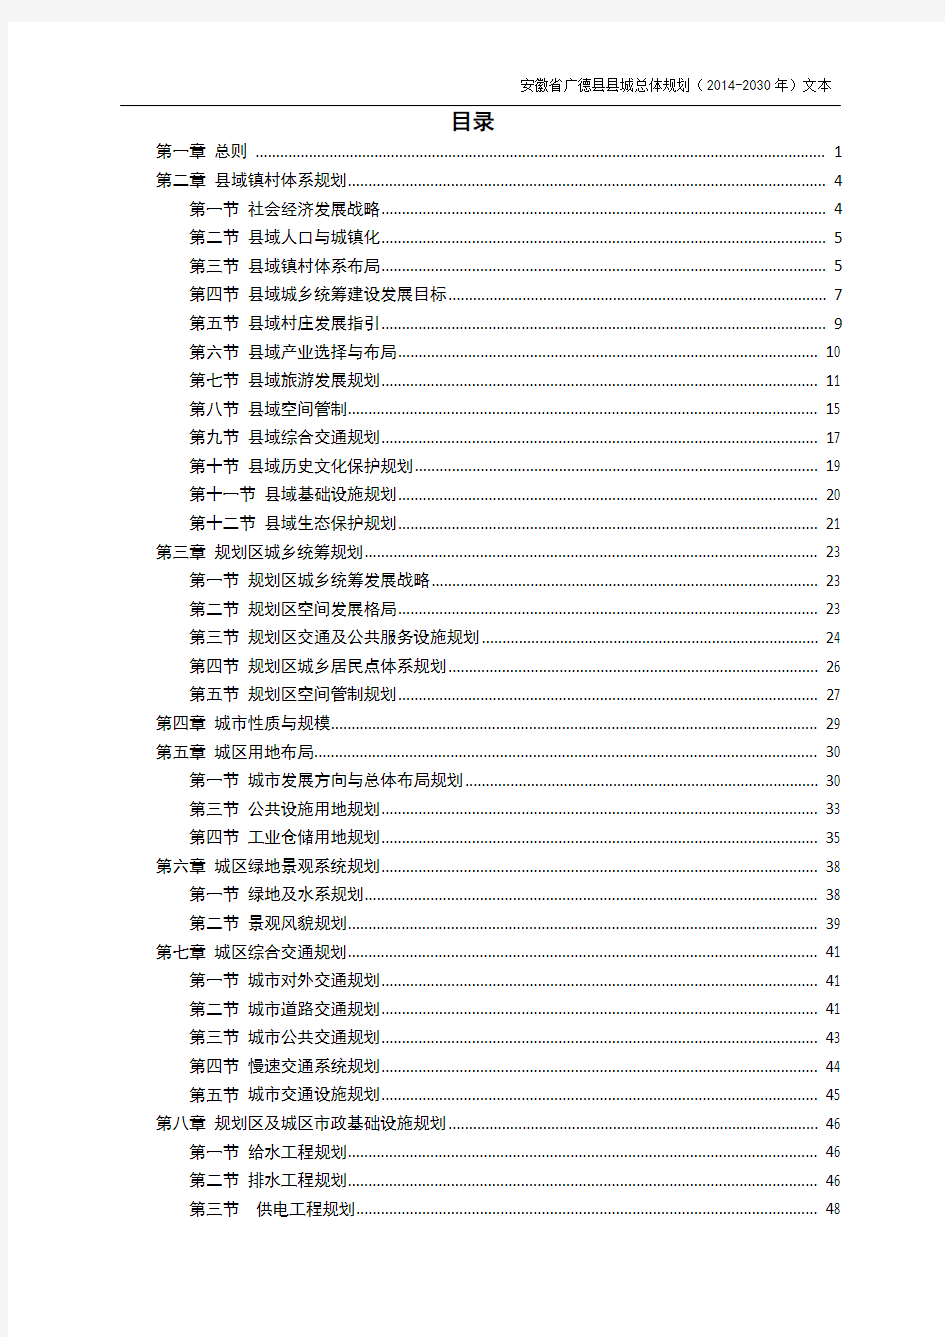 广德县县城总体规划(2014-2030年)文本(报批稿)0308